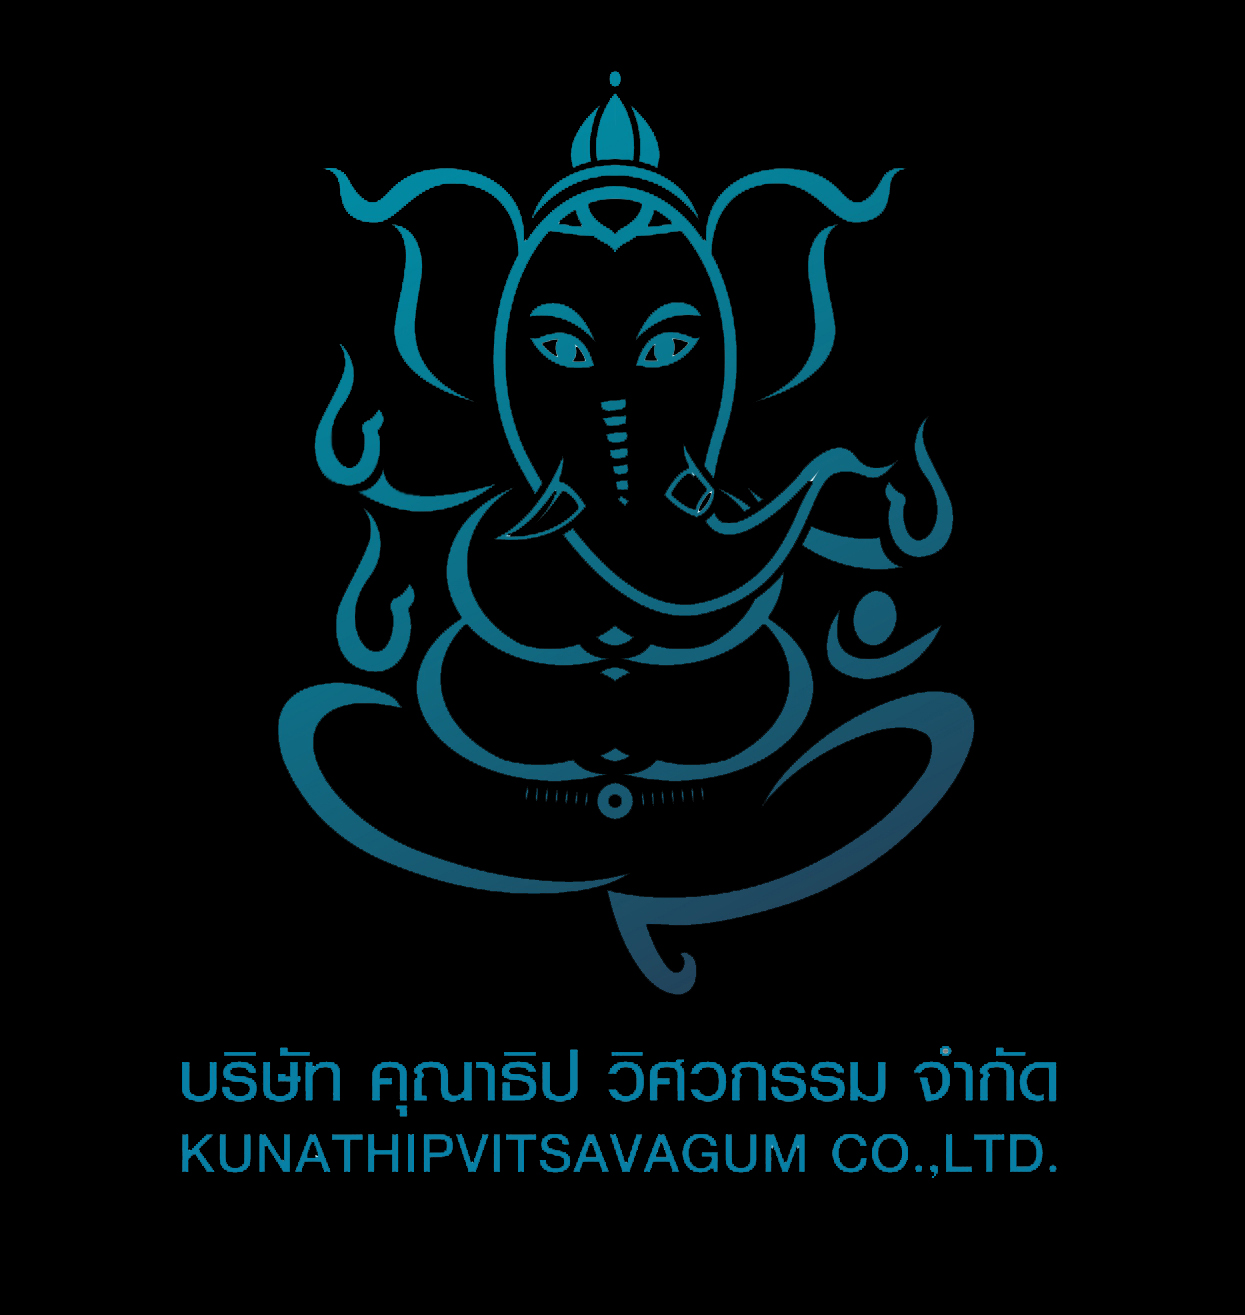 Kunathipvitsavagum Co Ltd